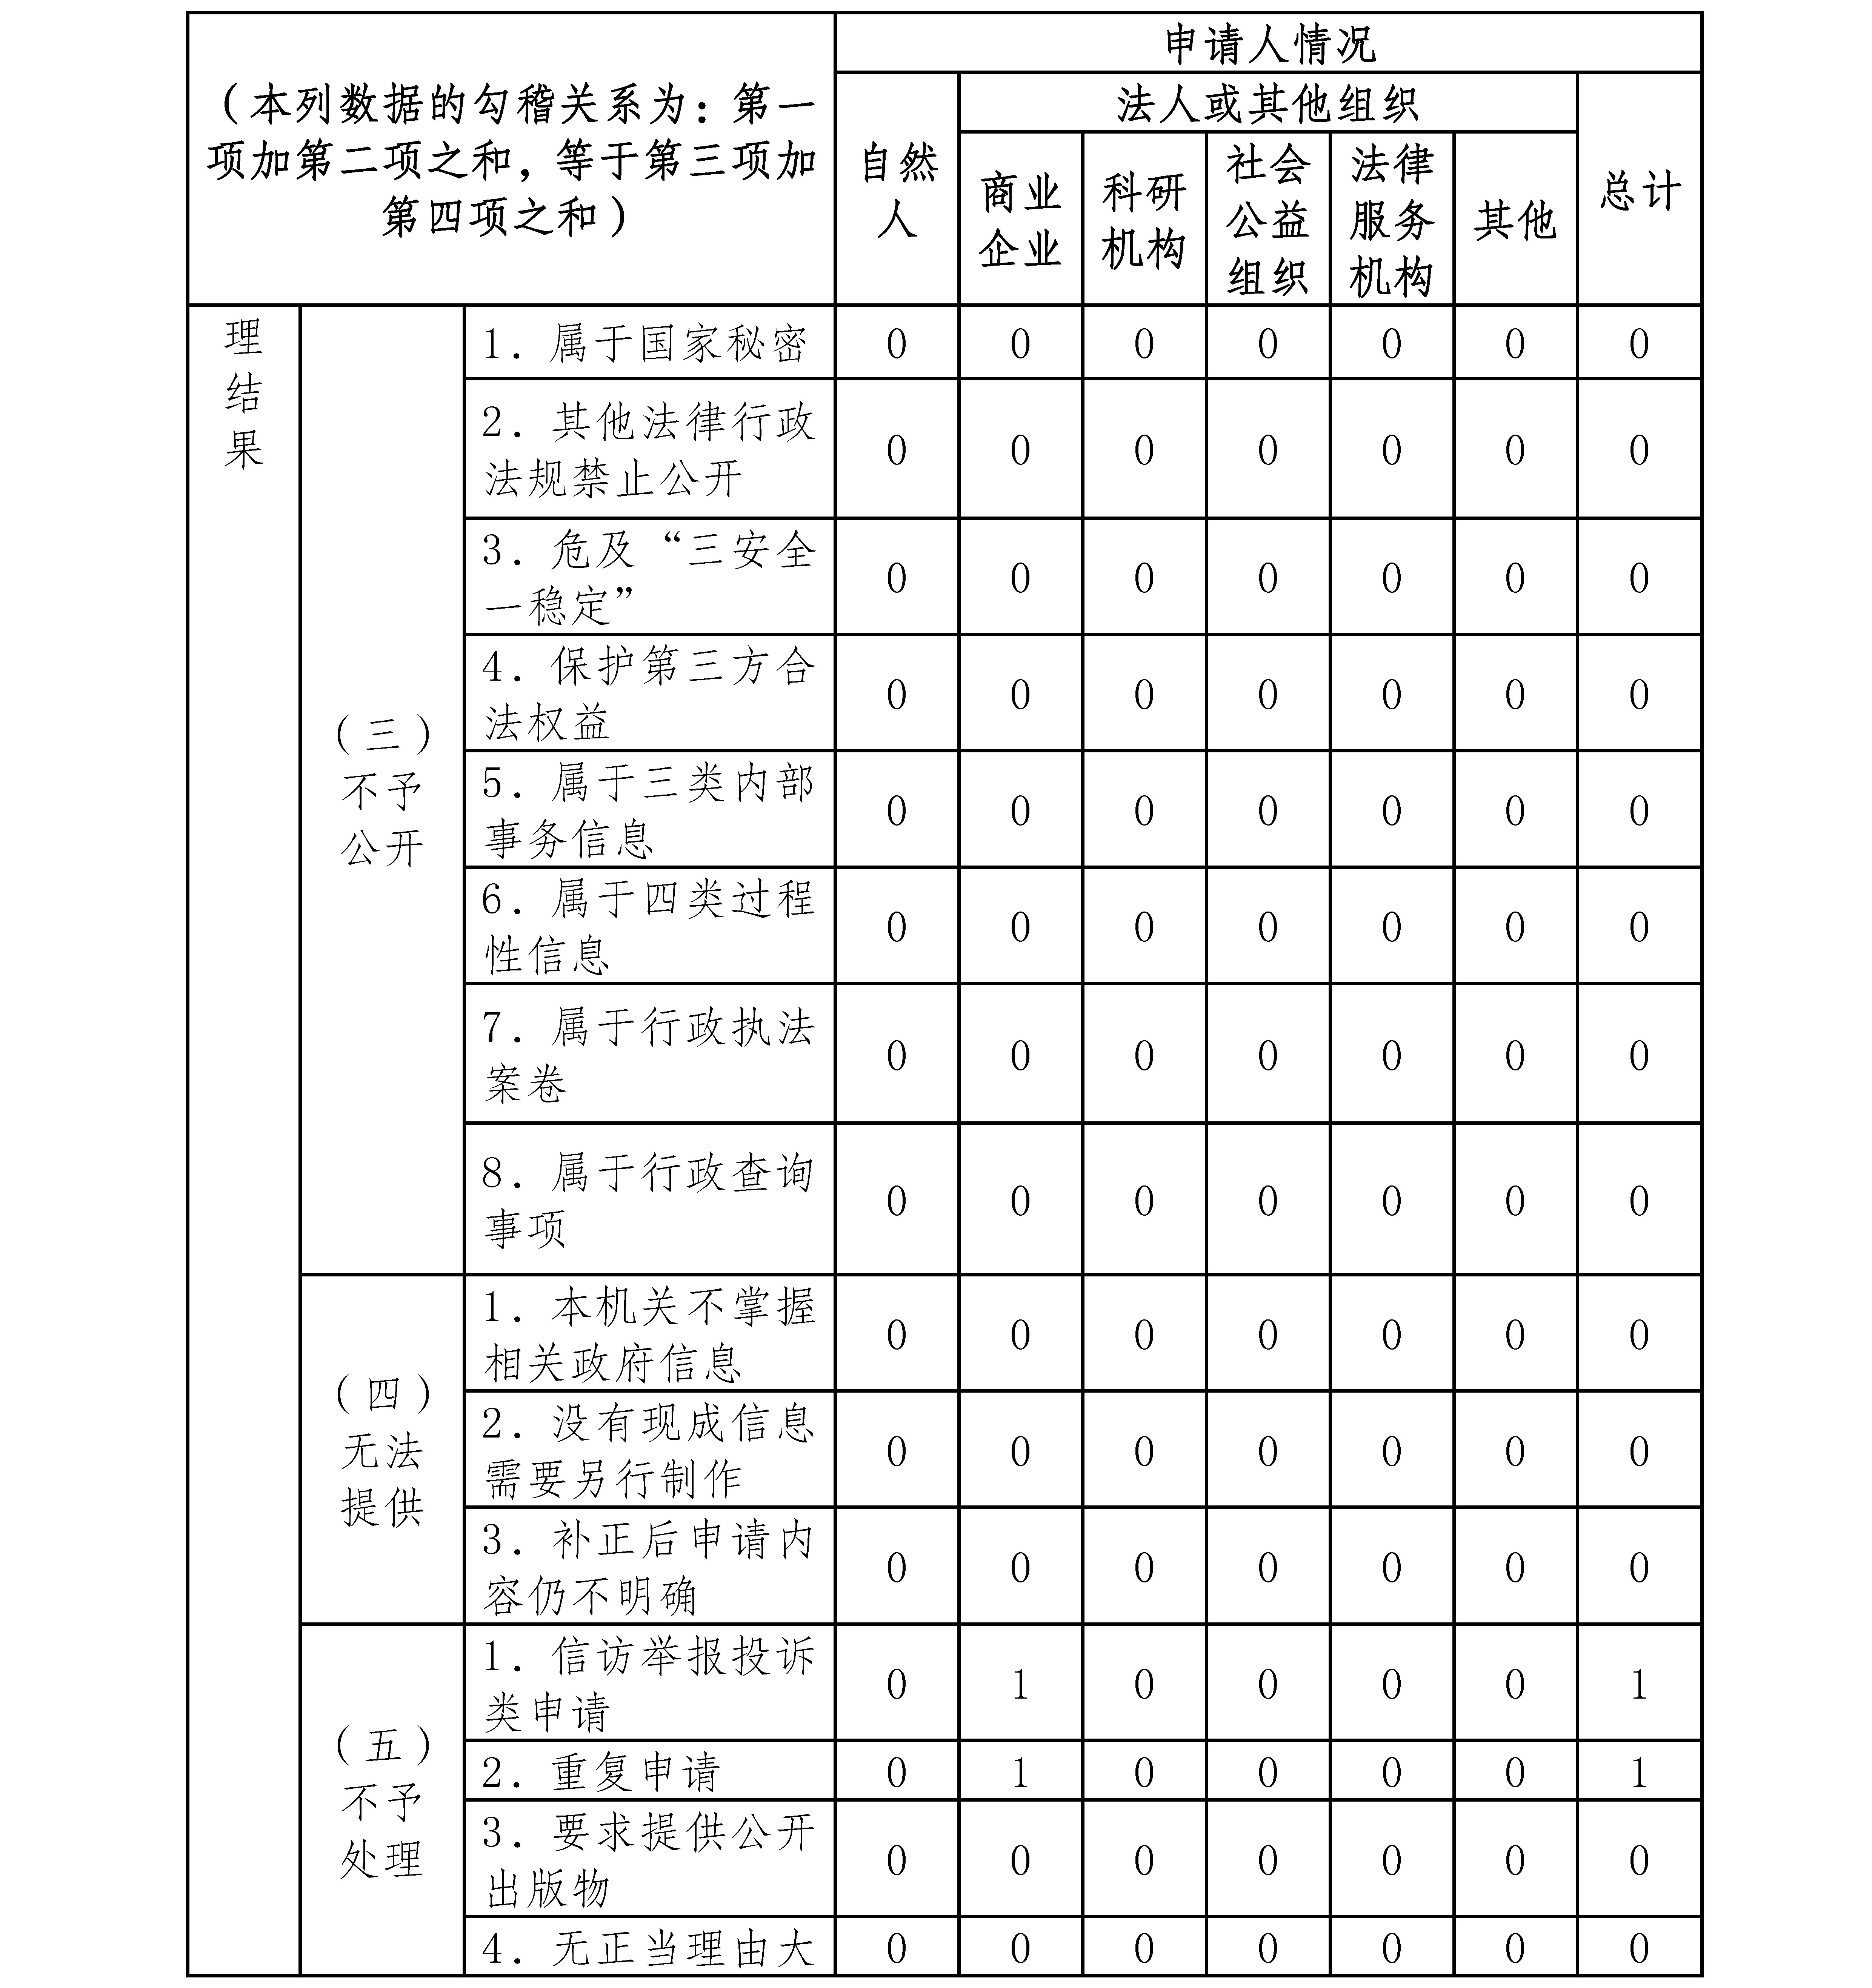 雲南省審計廳2020年政府信息公開工作年度報告